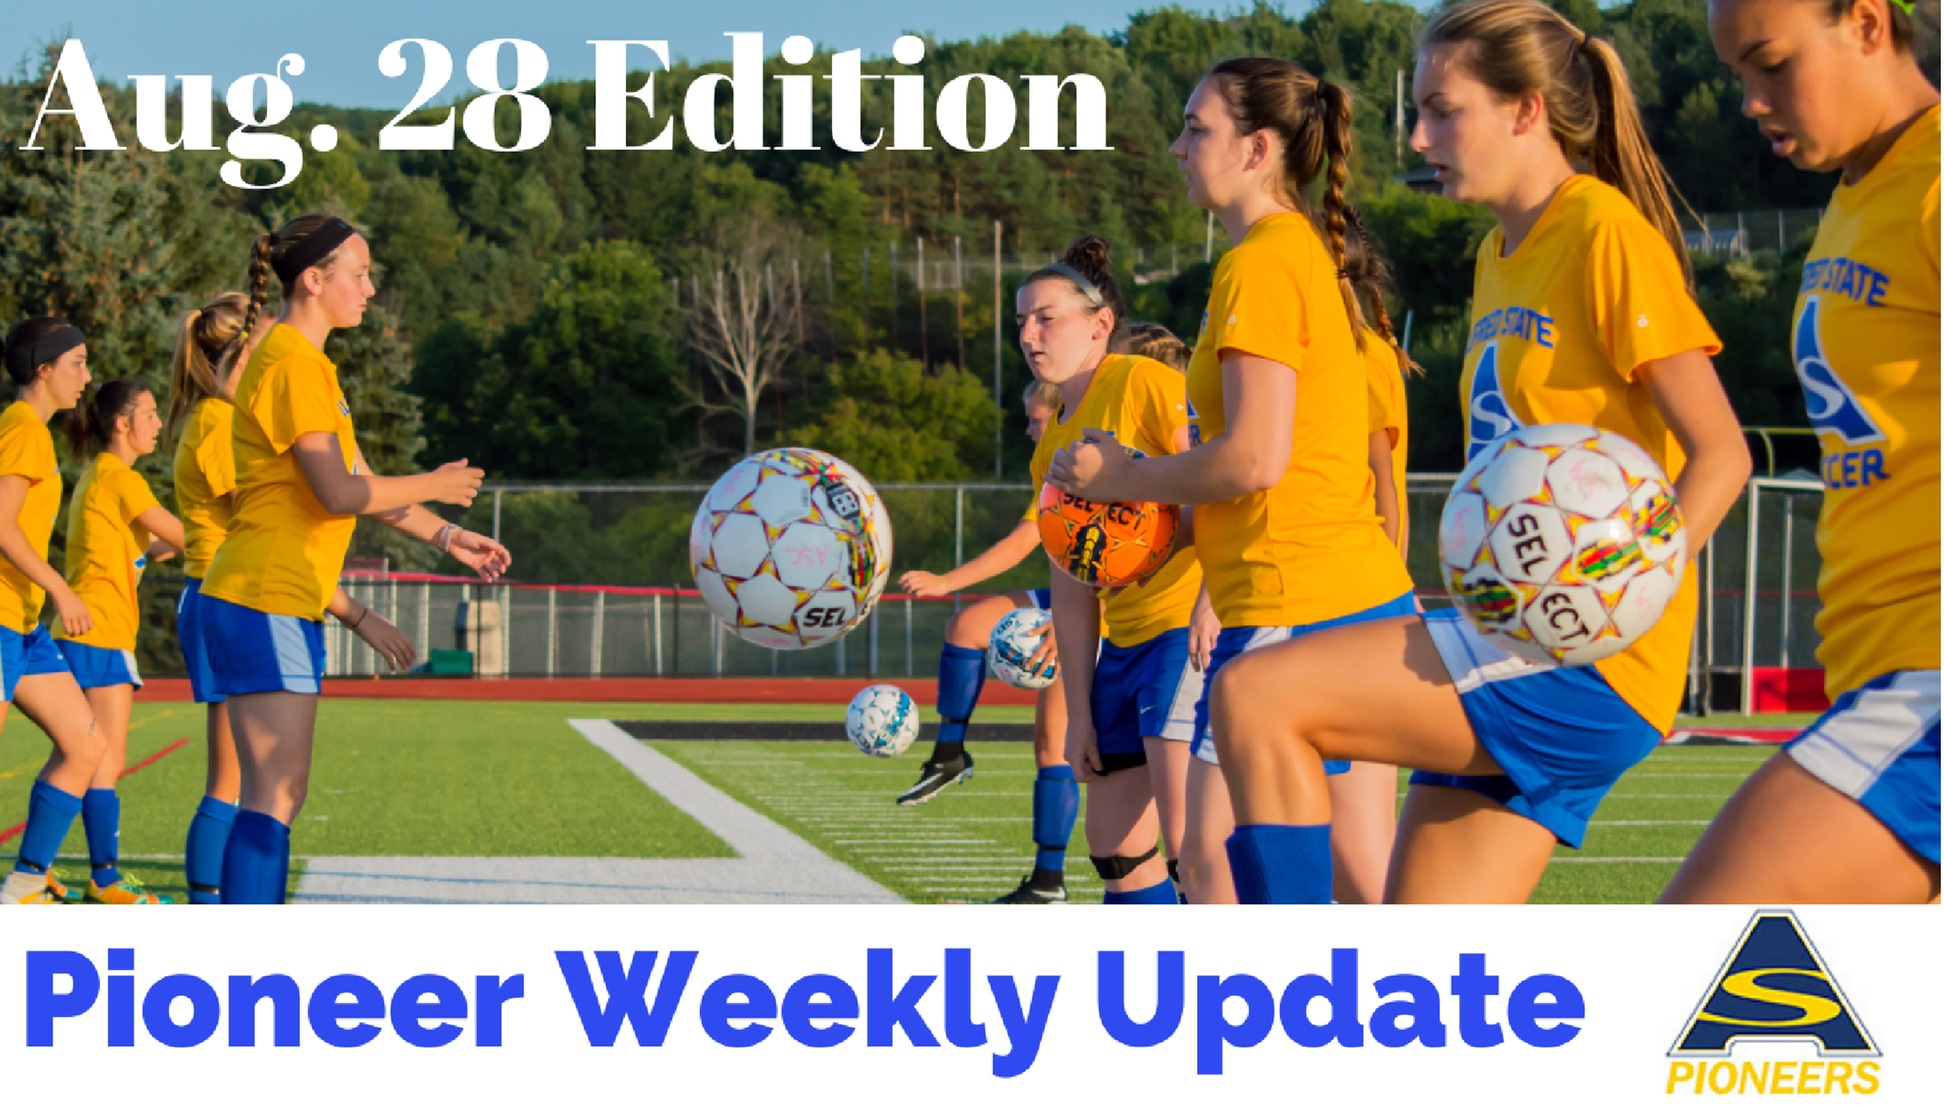 Pioneer Weekly Update: Aug. 28 Edition